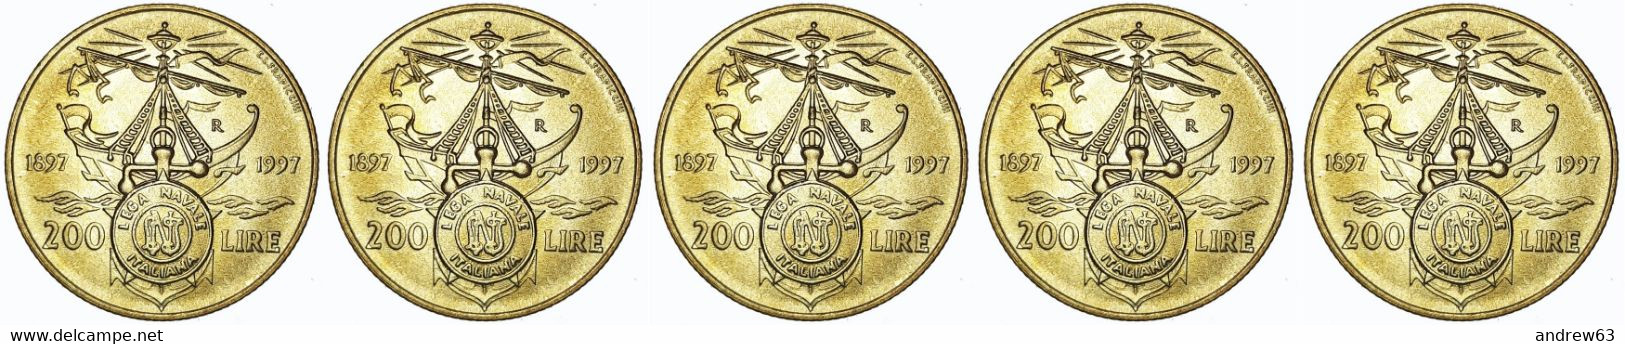 ITALIA - Lire 200 1997 Lega Navale Italiana - FDC/Unc Da Rotolino/from Roll 5 Monete/5 Coins - 200 Lire